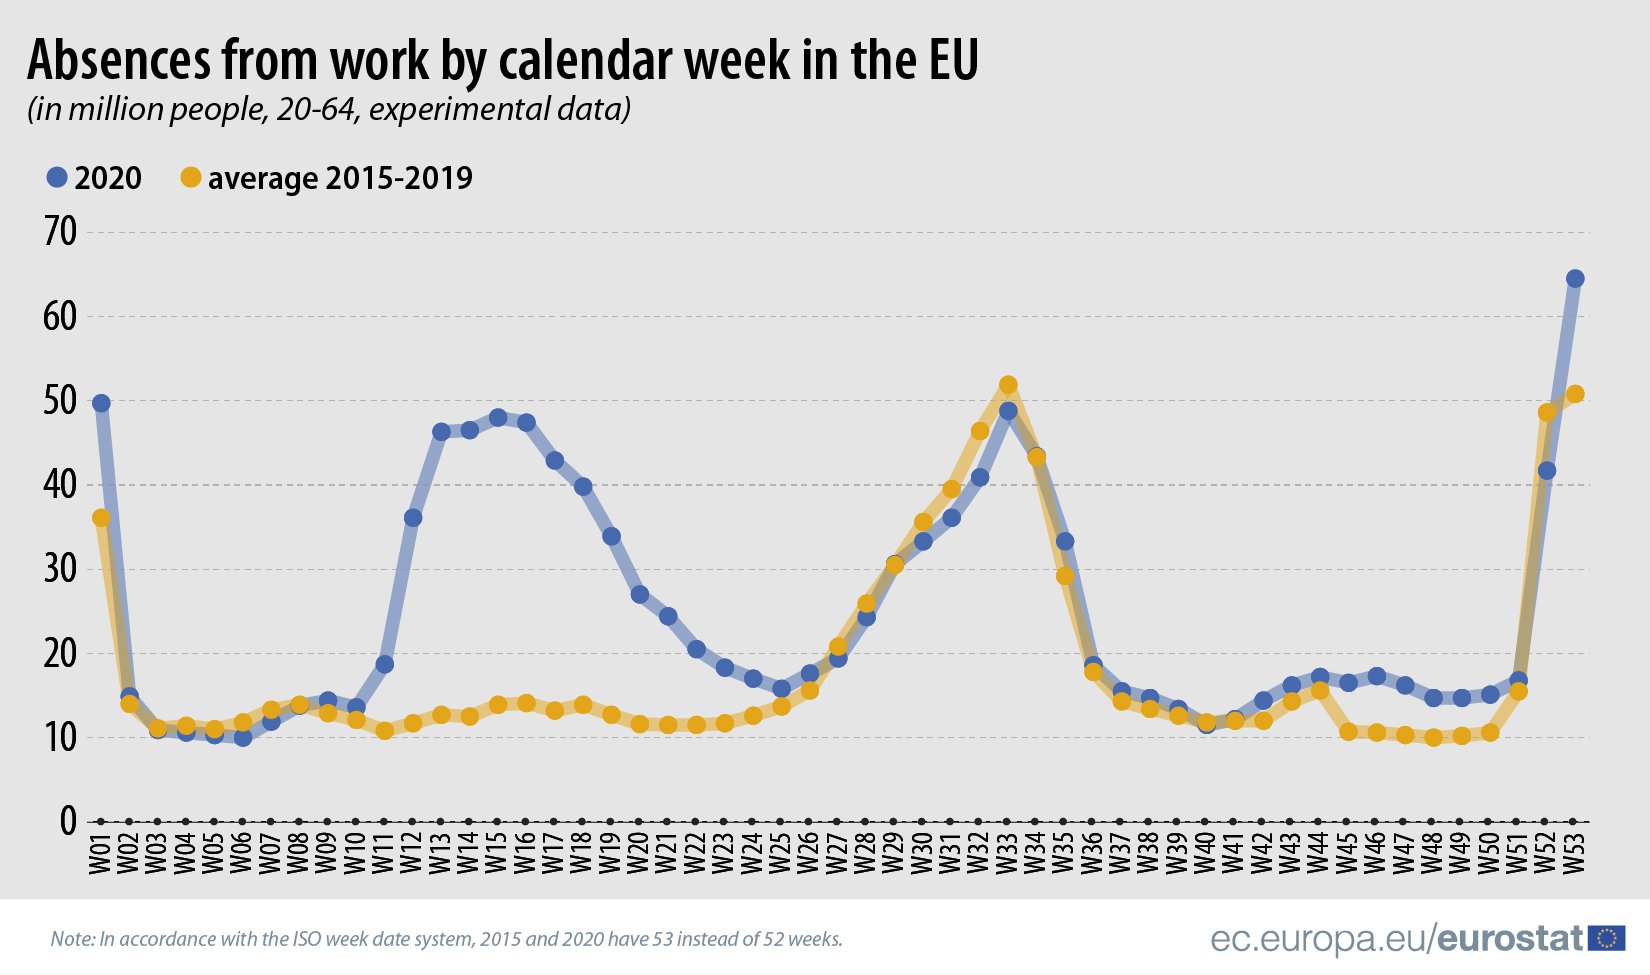 Privremena otpuštanja sa posla u EU dostigla rekord u 2020. godini 2